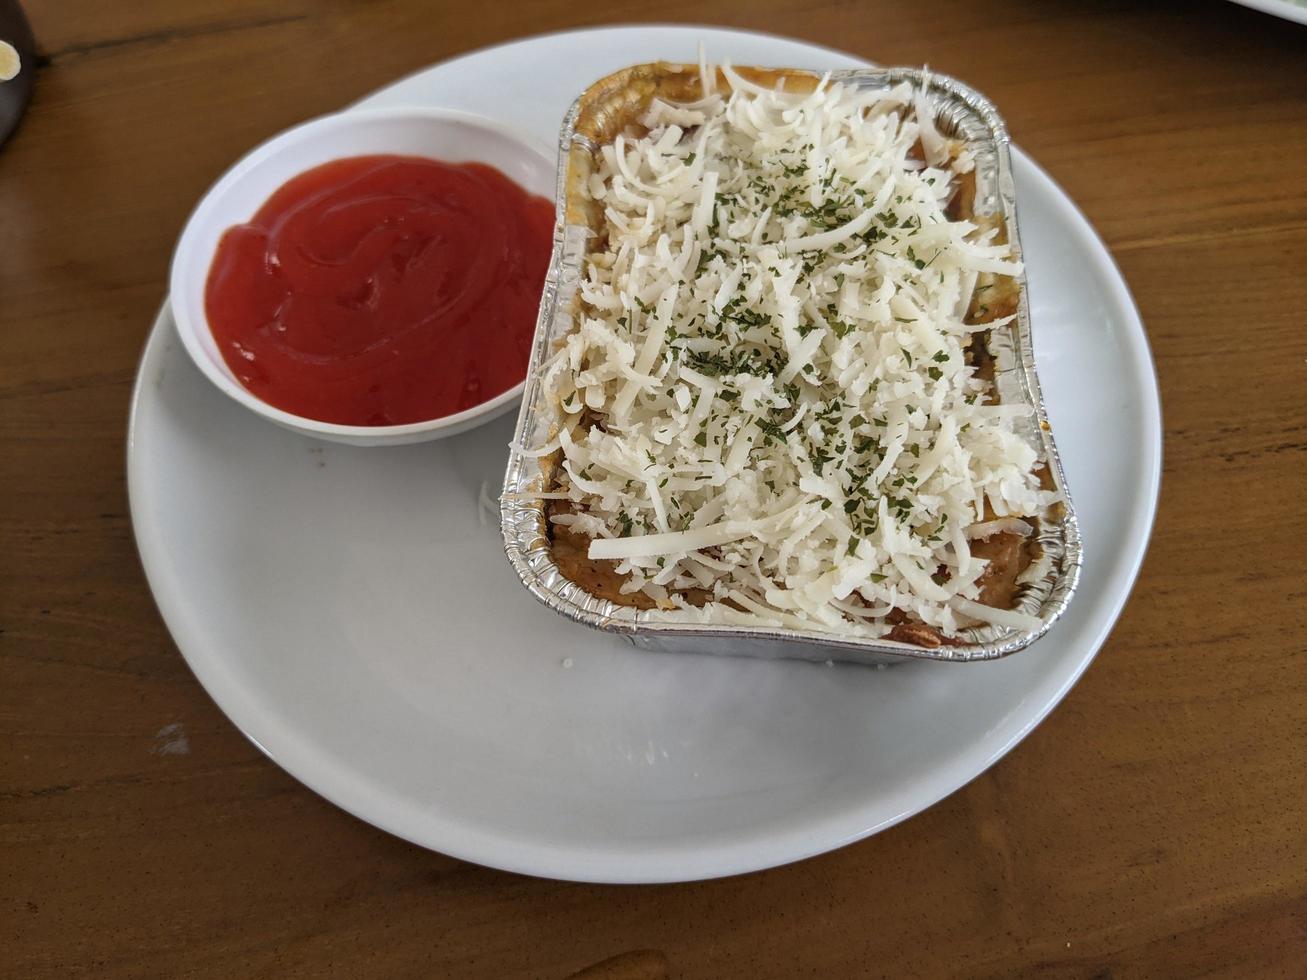 cedro queso y queso Mozzarella en el asado carne de vaca lasaña con chile salsa. el foto es adecuado a utilizar para comida fondo, póster y comida contenido medios de comunicación.